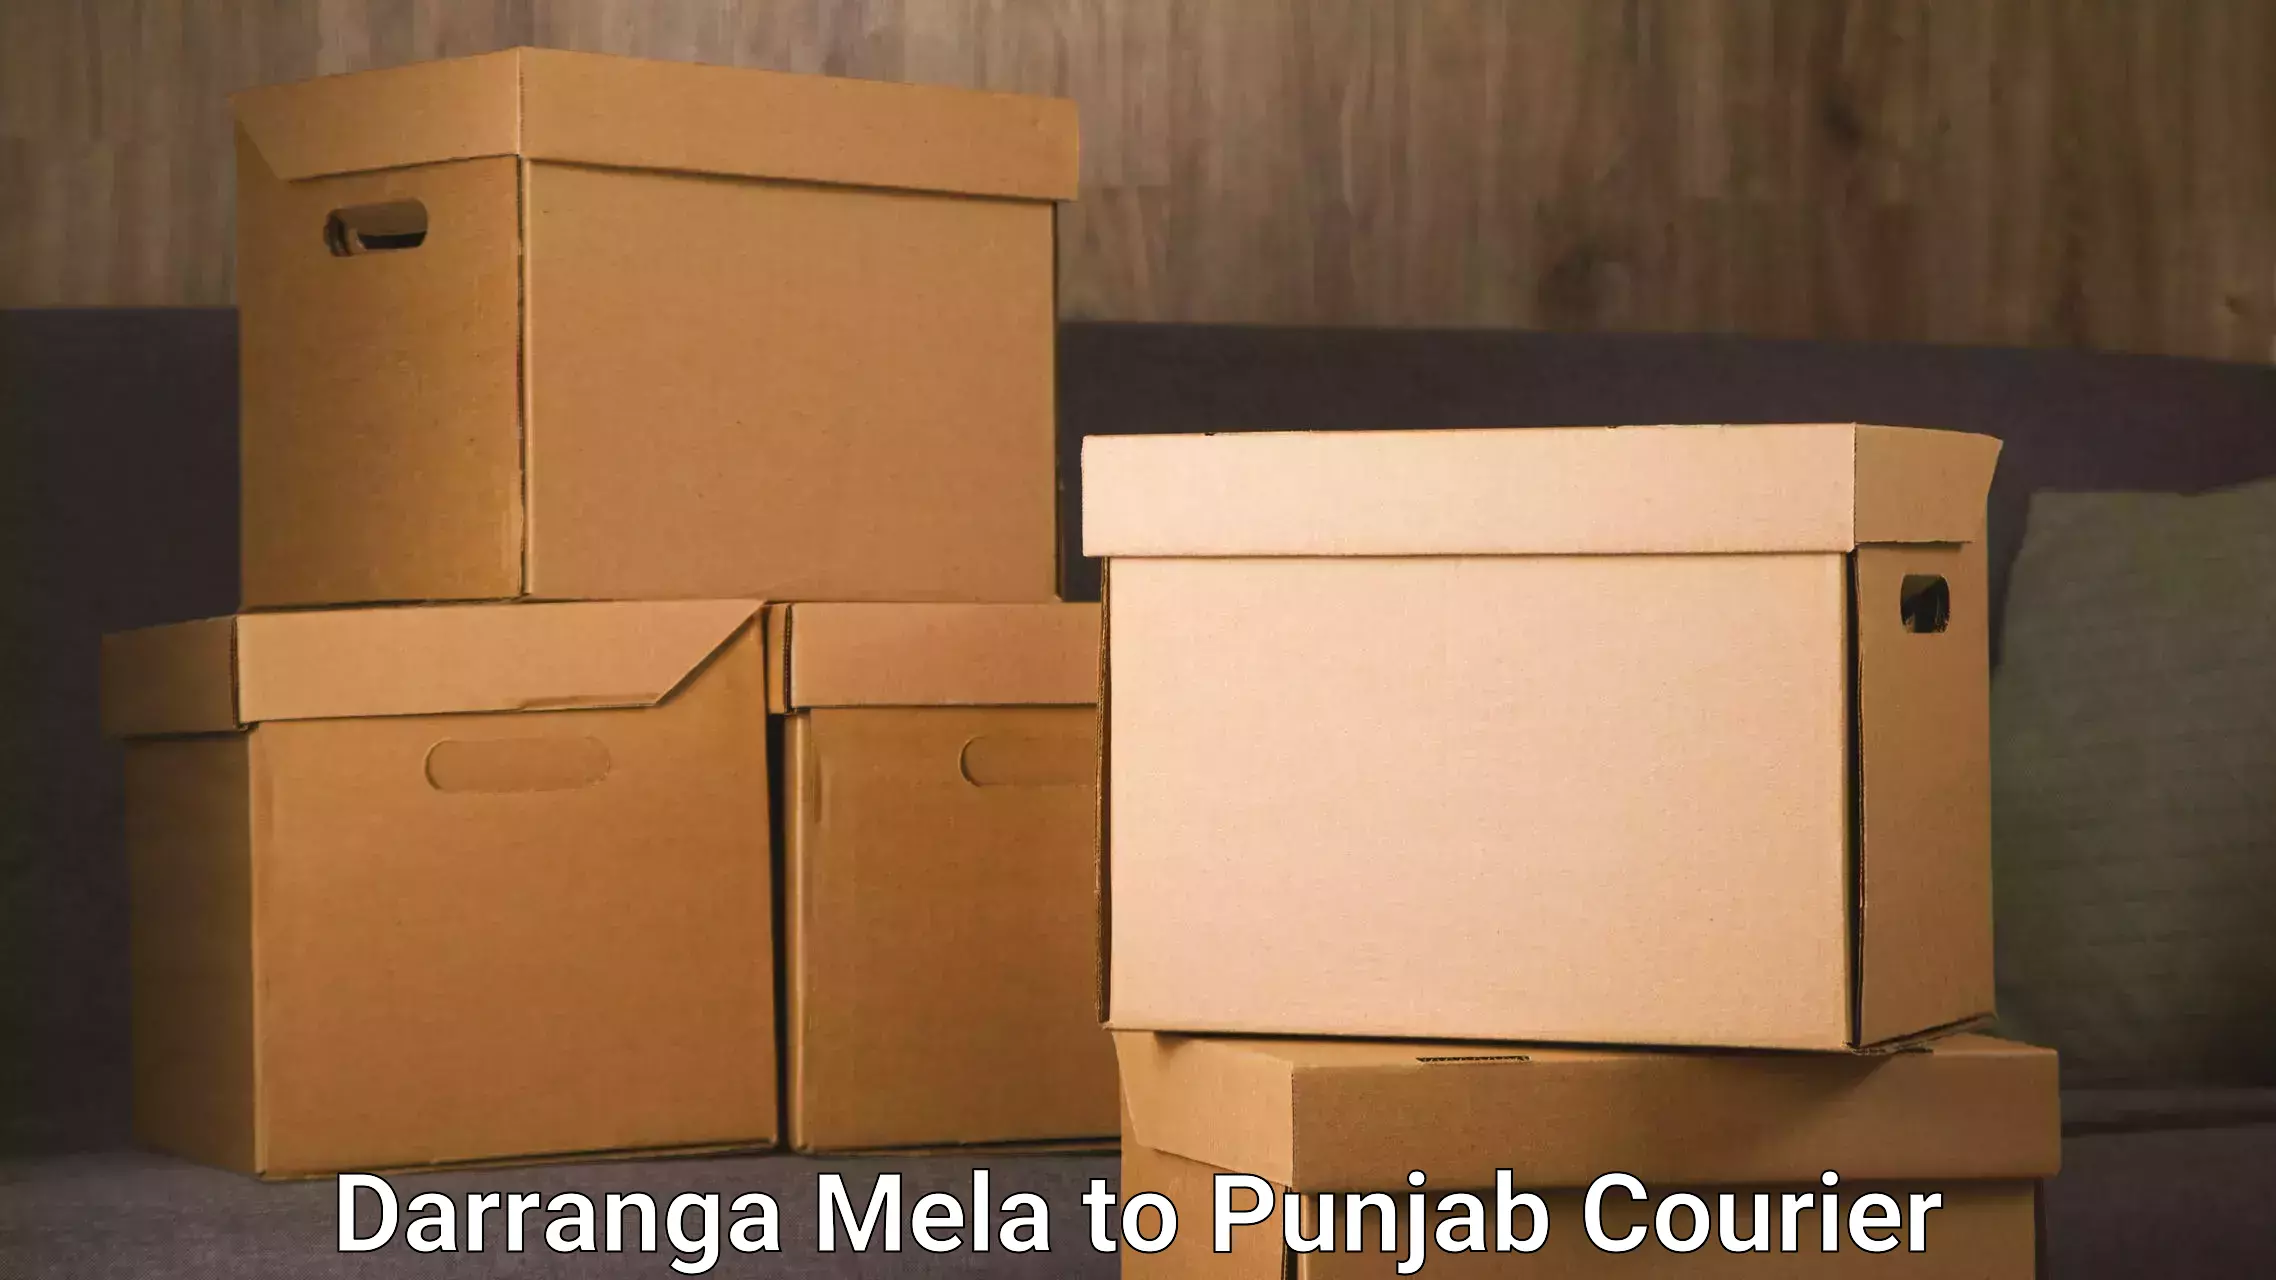 Quality courier services Darranga Mela to Dera Bassi